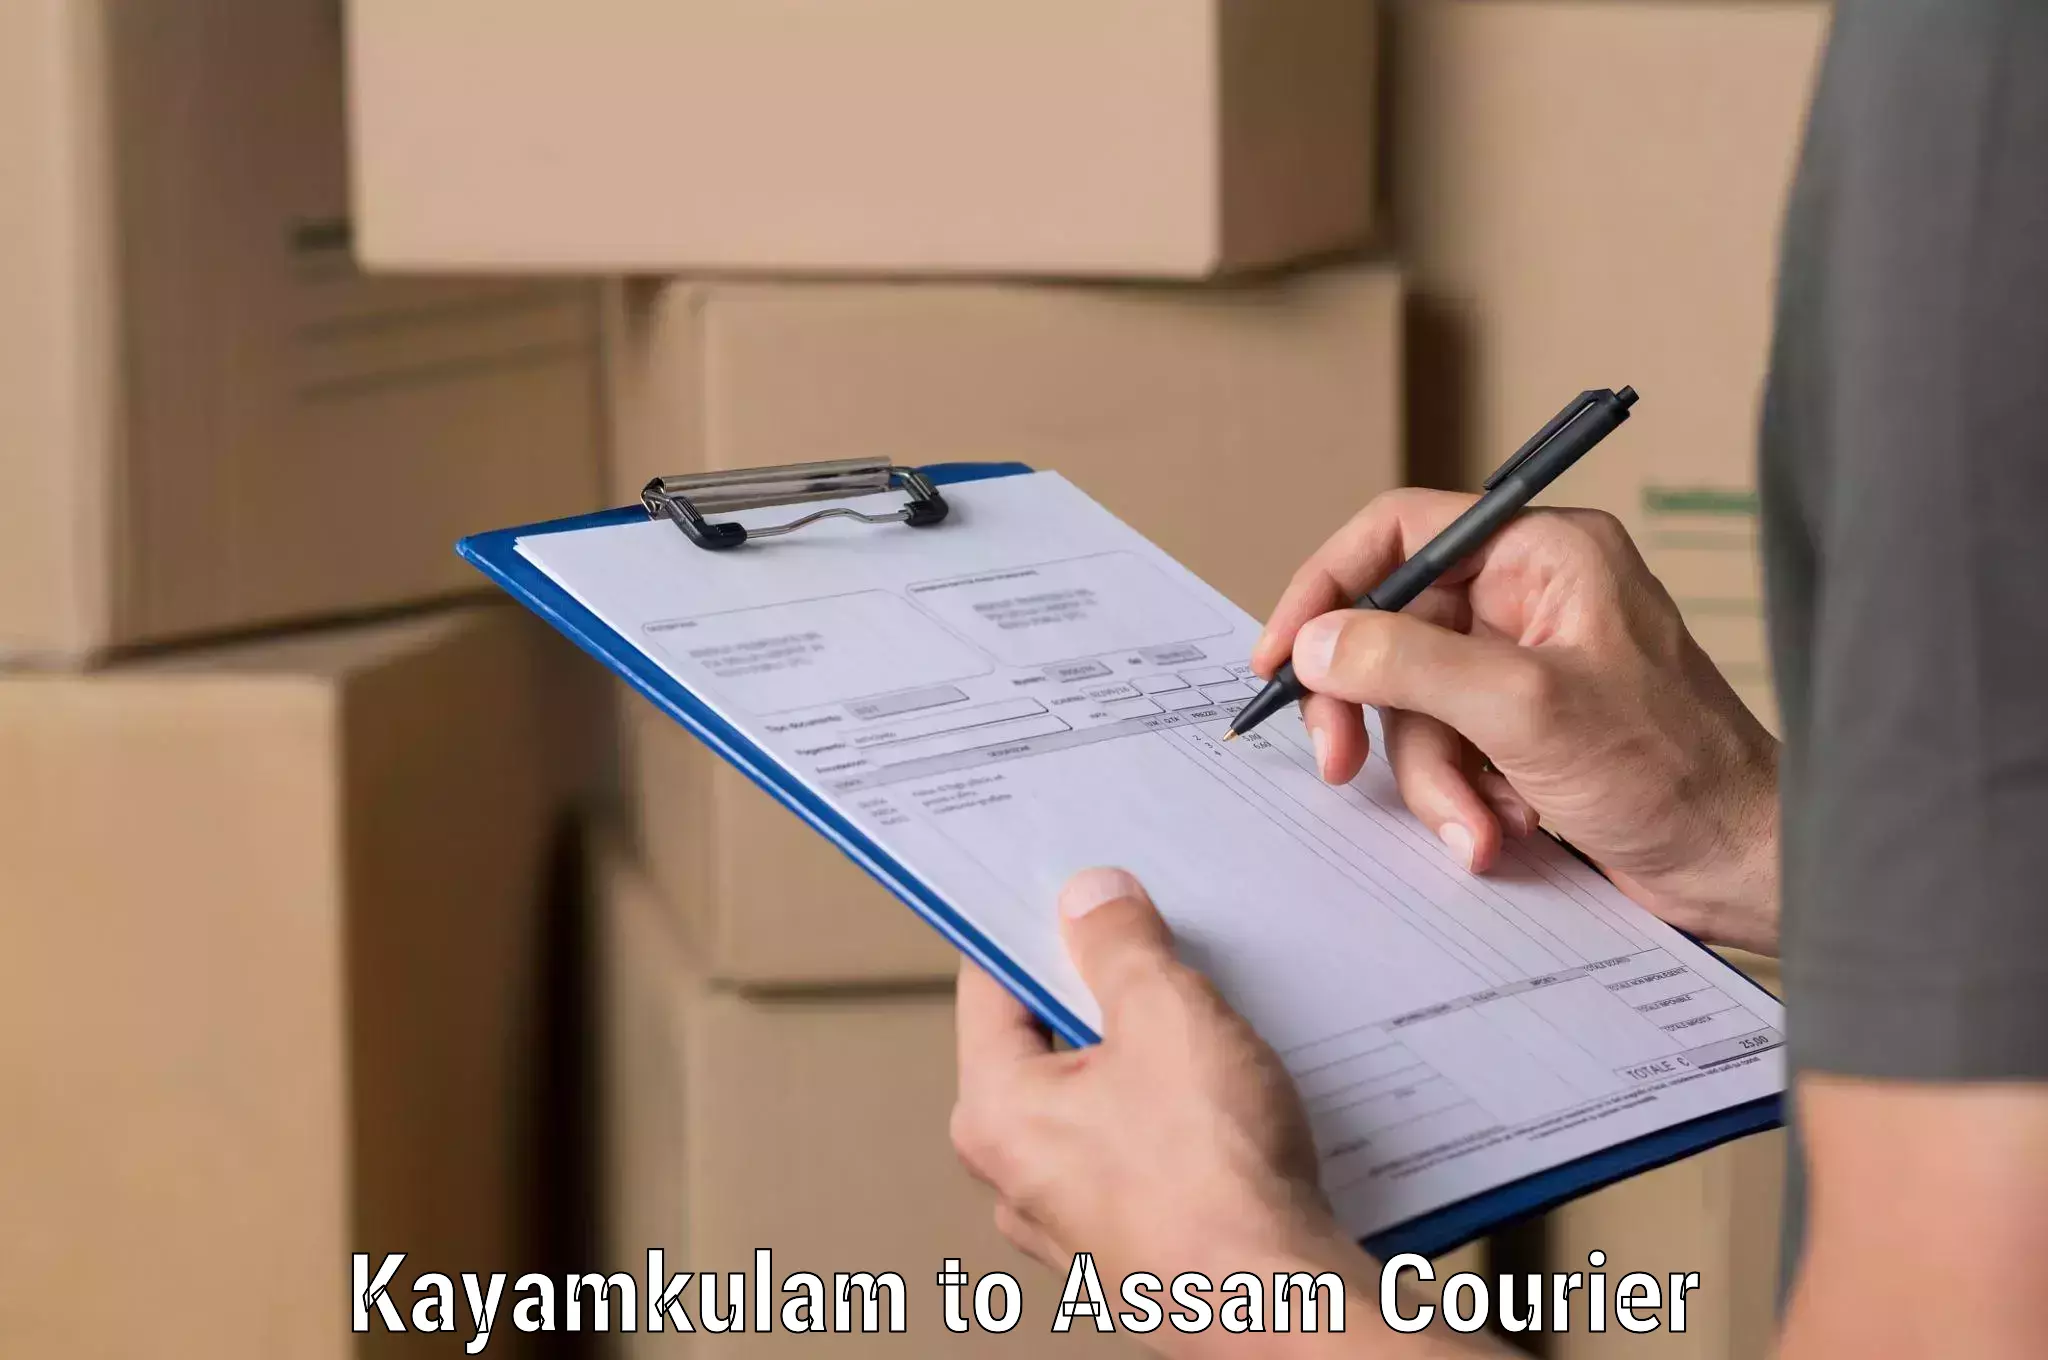 High-speed logistics services Kayamkulam to Kalgachia